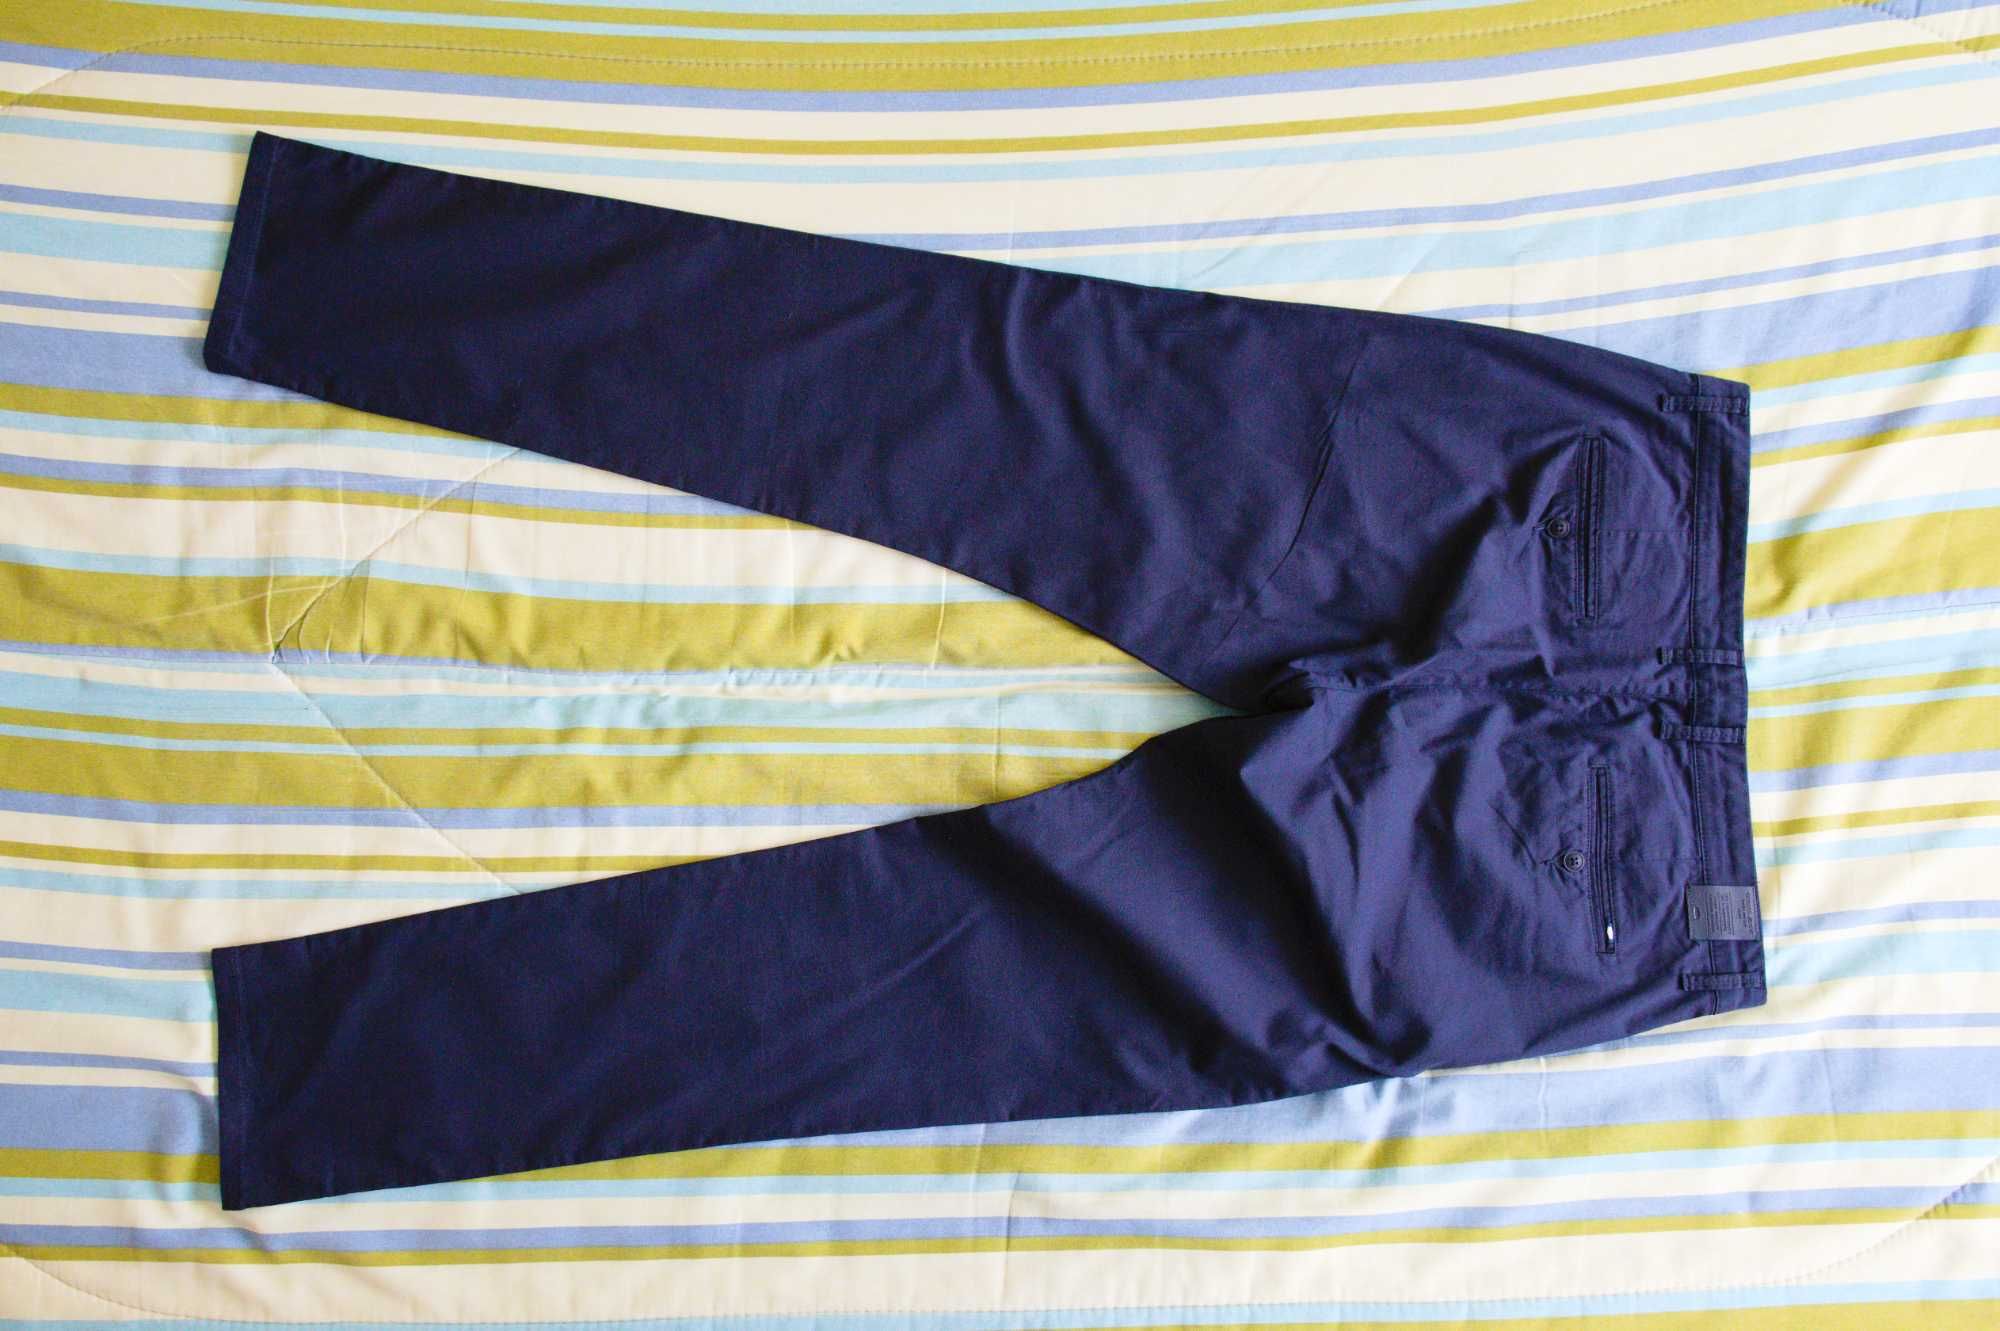 Spodnie męskie Cross Jeans, chino, W34/L34, granatowe, jak nowe